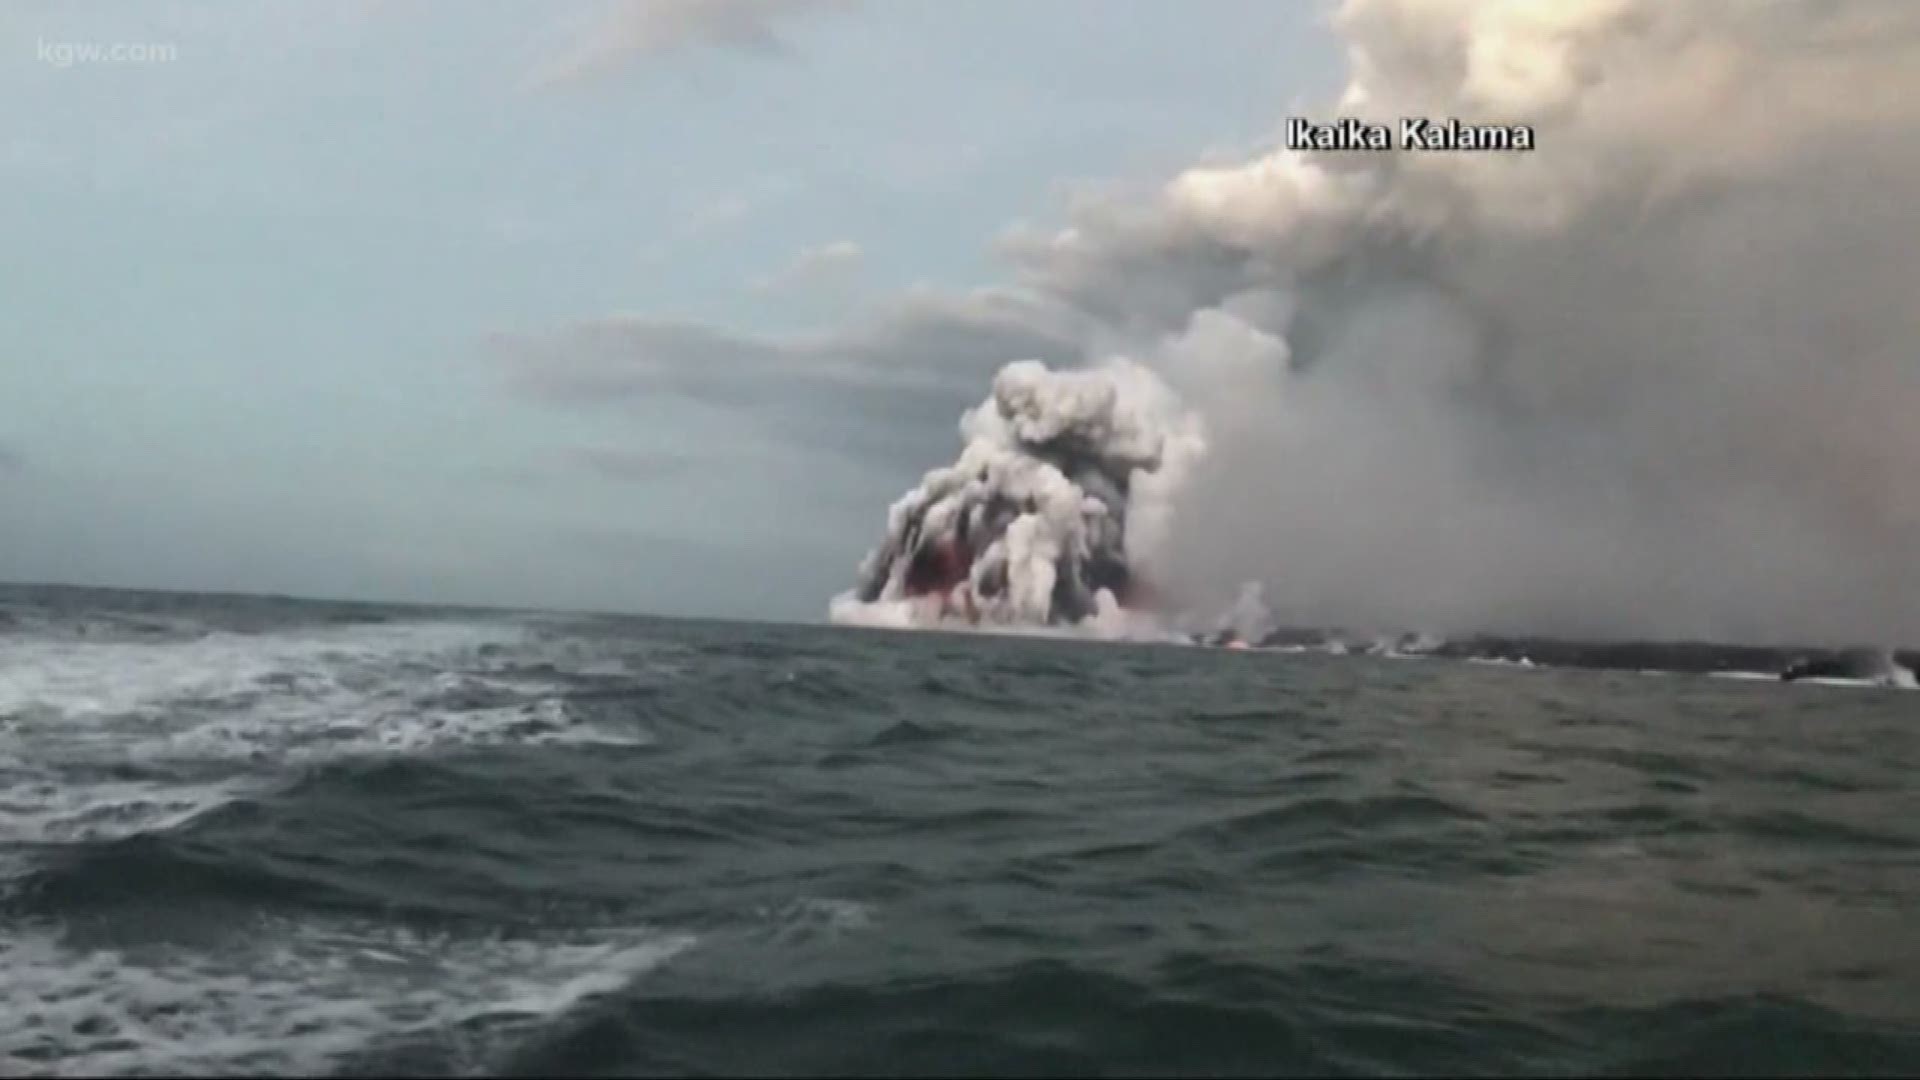 23 injured on Hawaiian tour boat by 'Lava Bomb' from Kilaeua